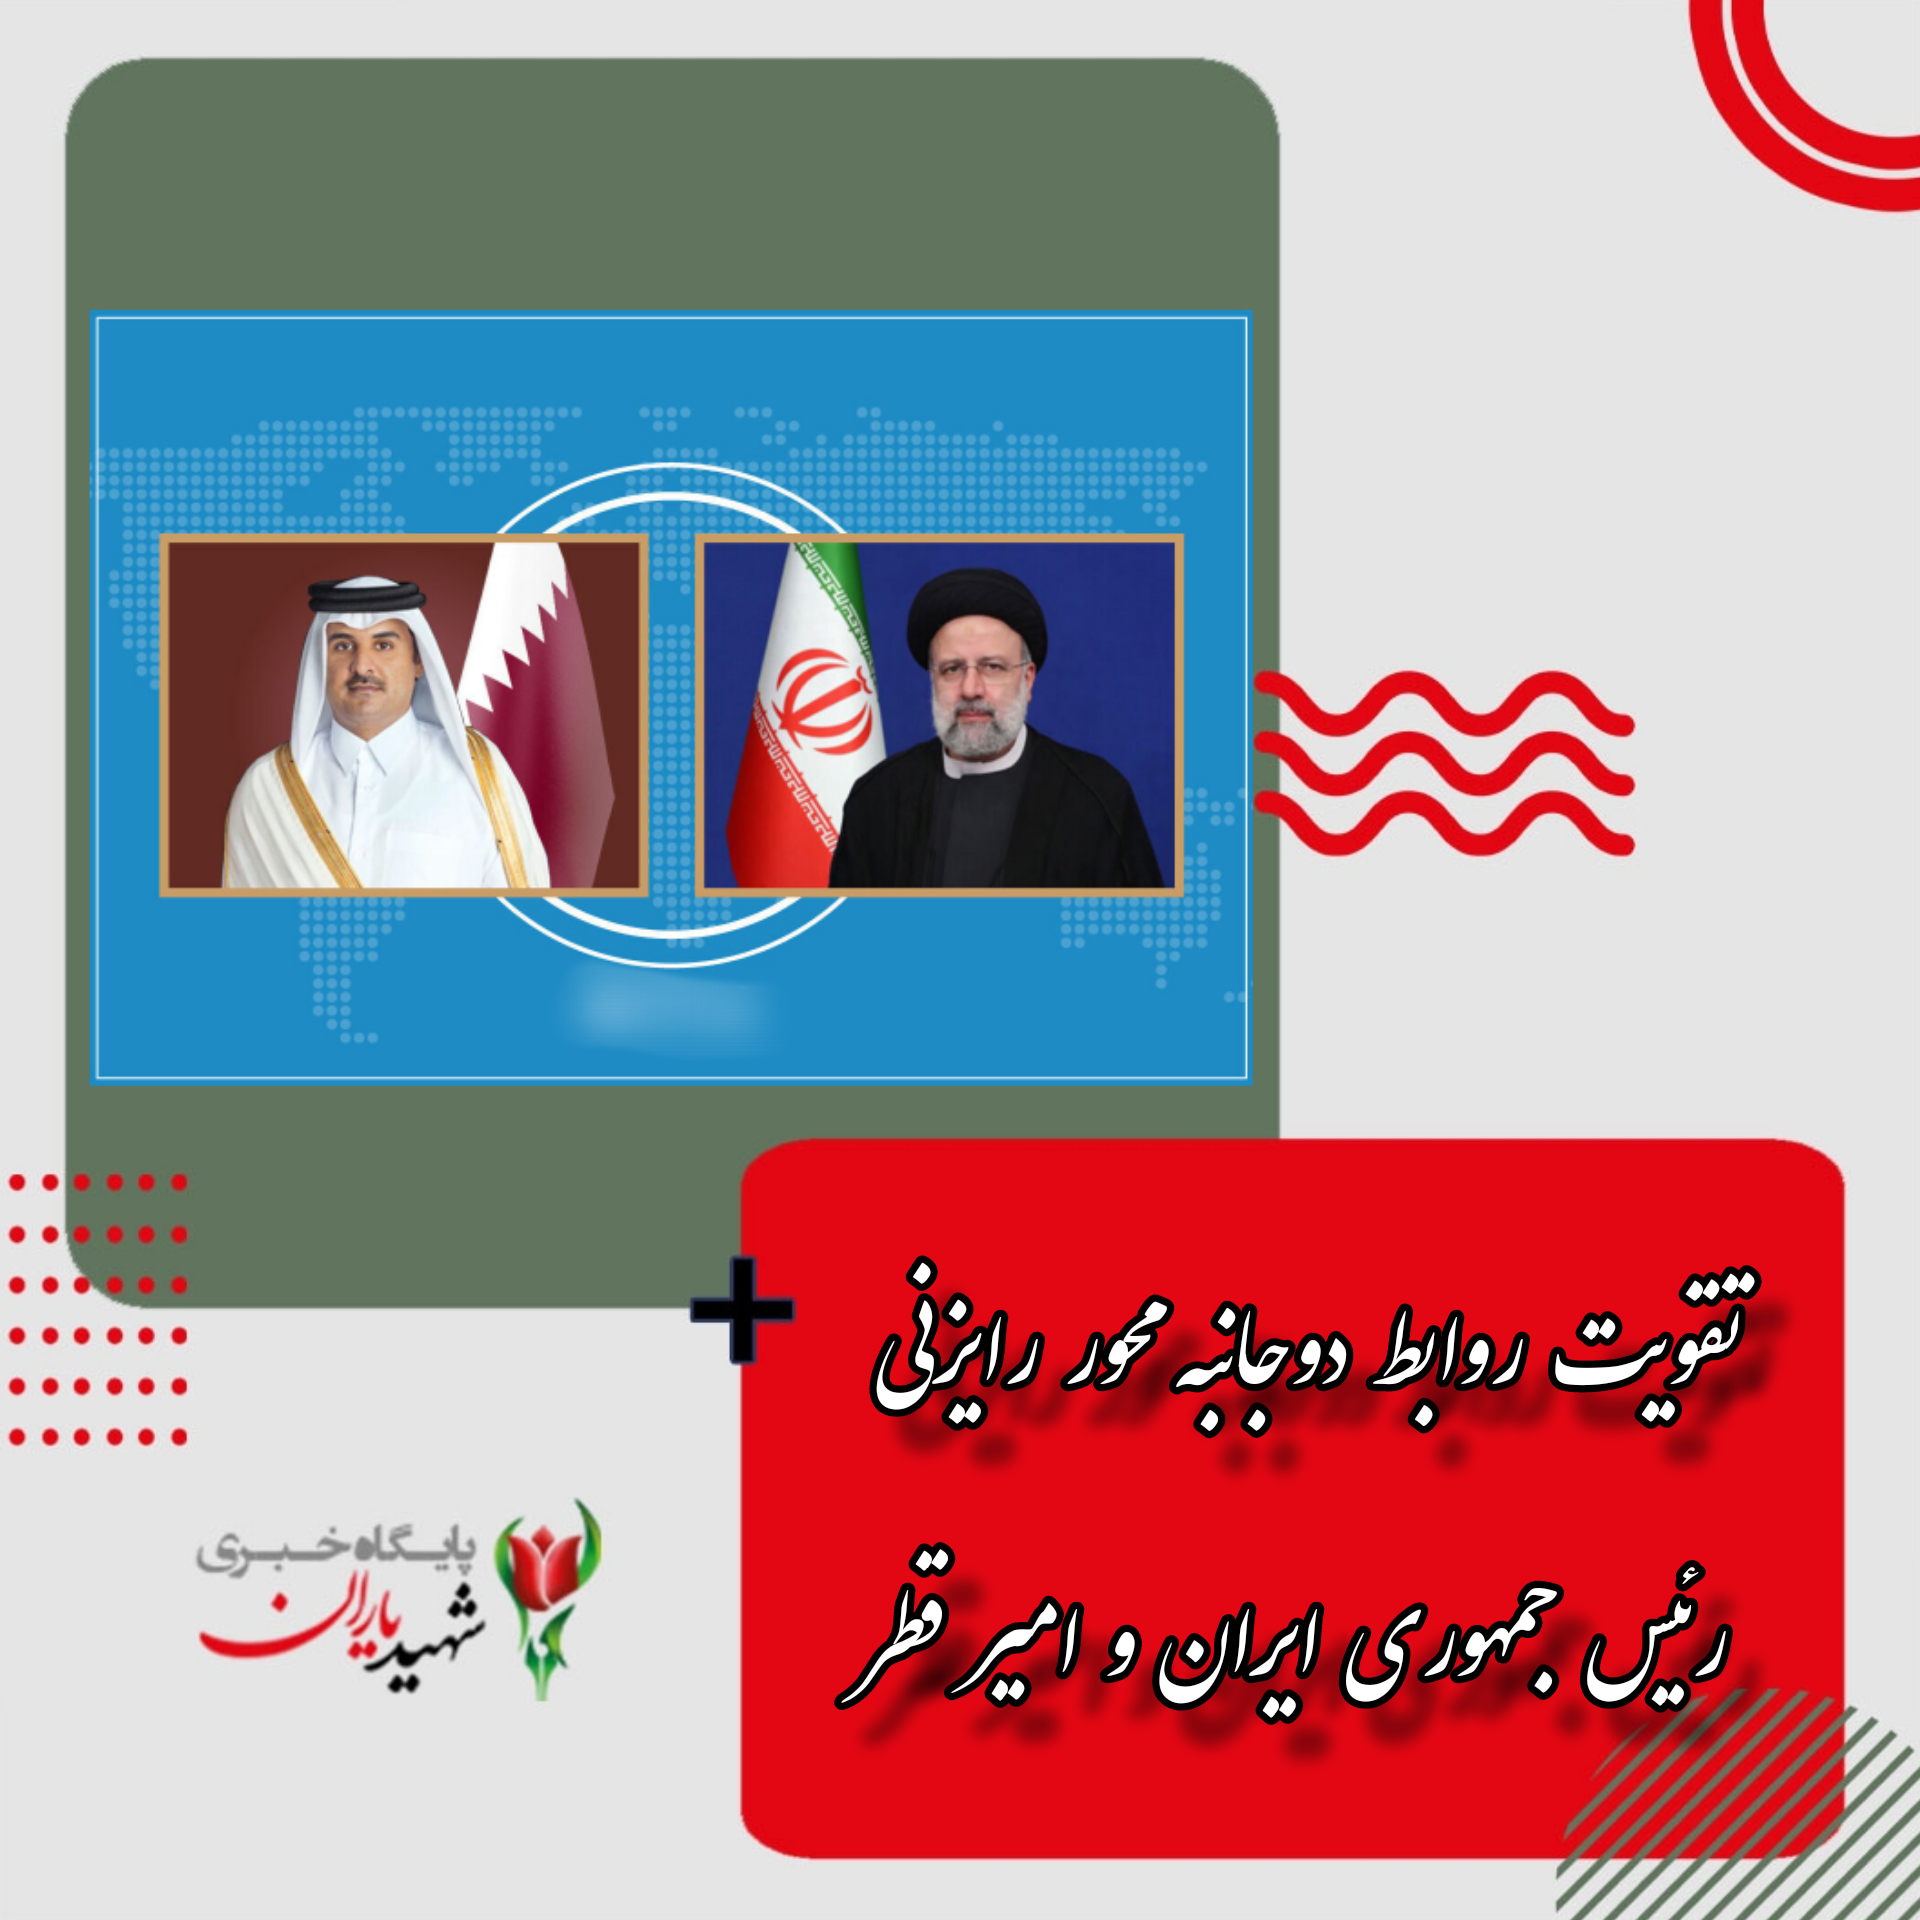 تقویت روابط دوجانبه محور رایزنی رئیس جمهوری ایران و امیر قطر